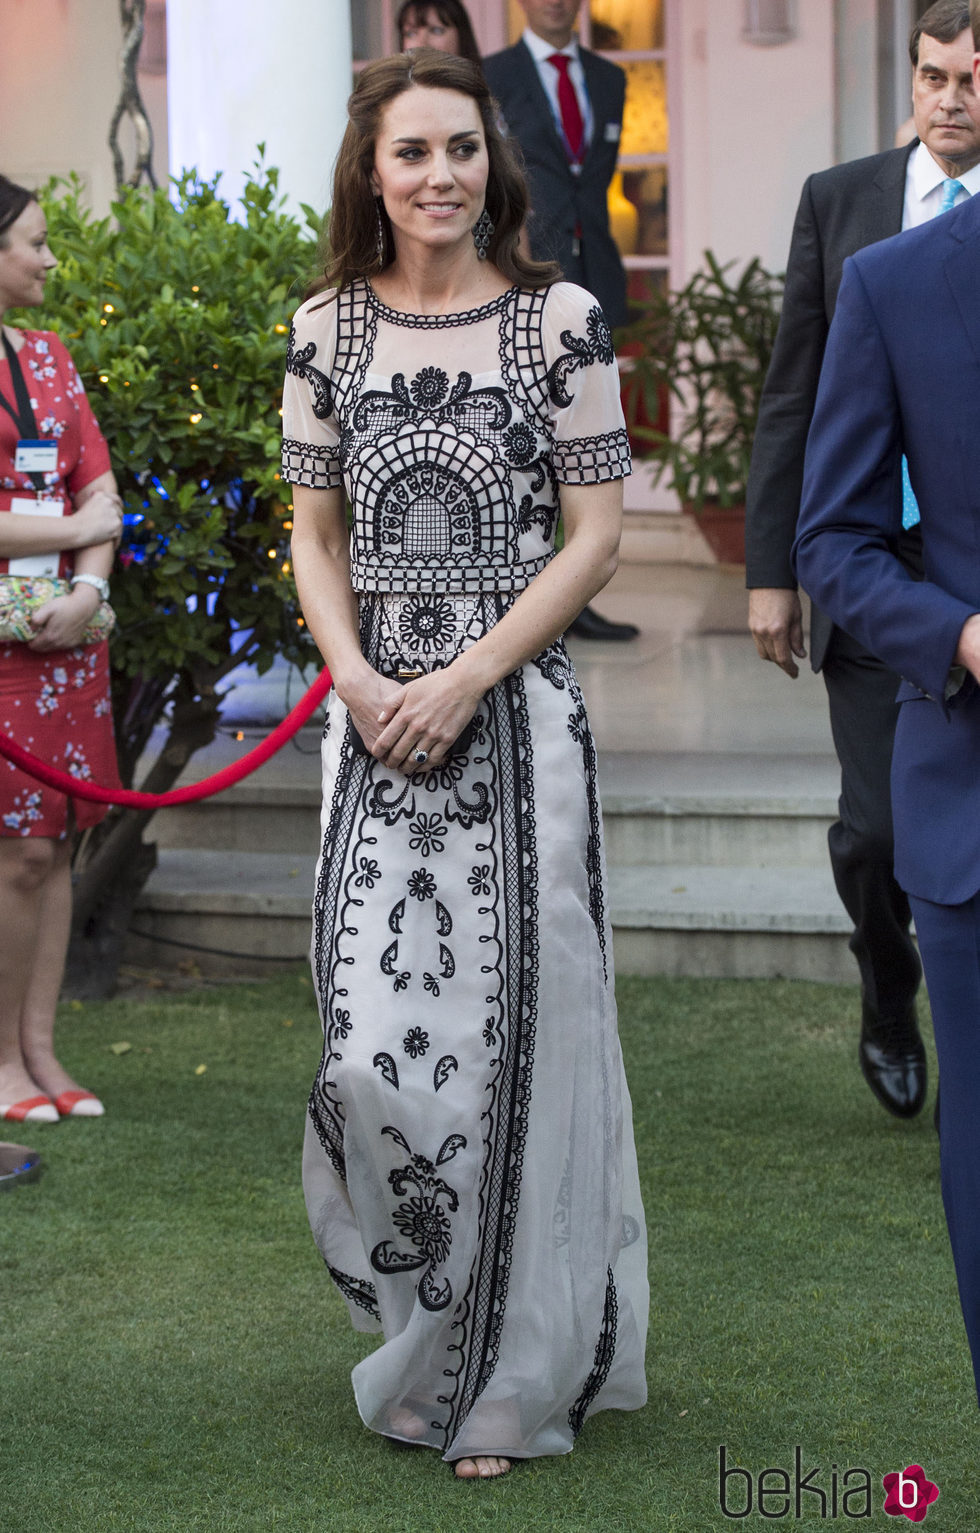 Kate Middleton en el día 2 de la visita oficial a la India y Bhutan